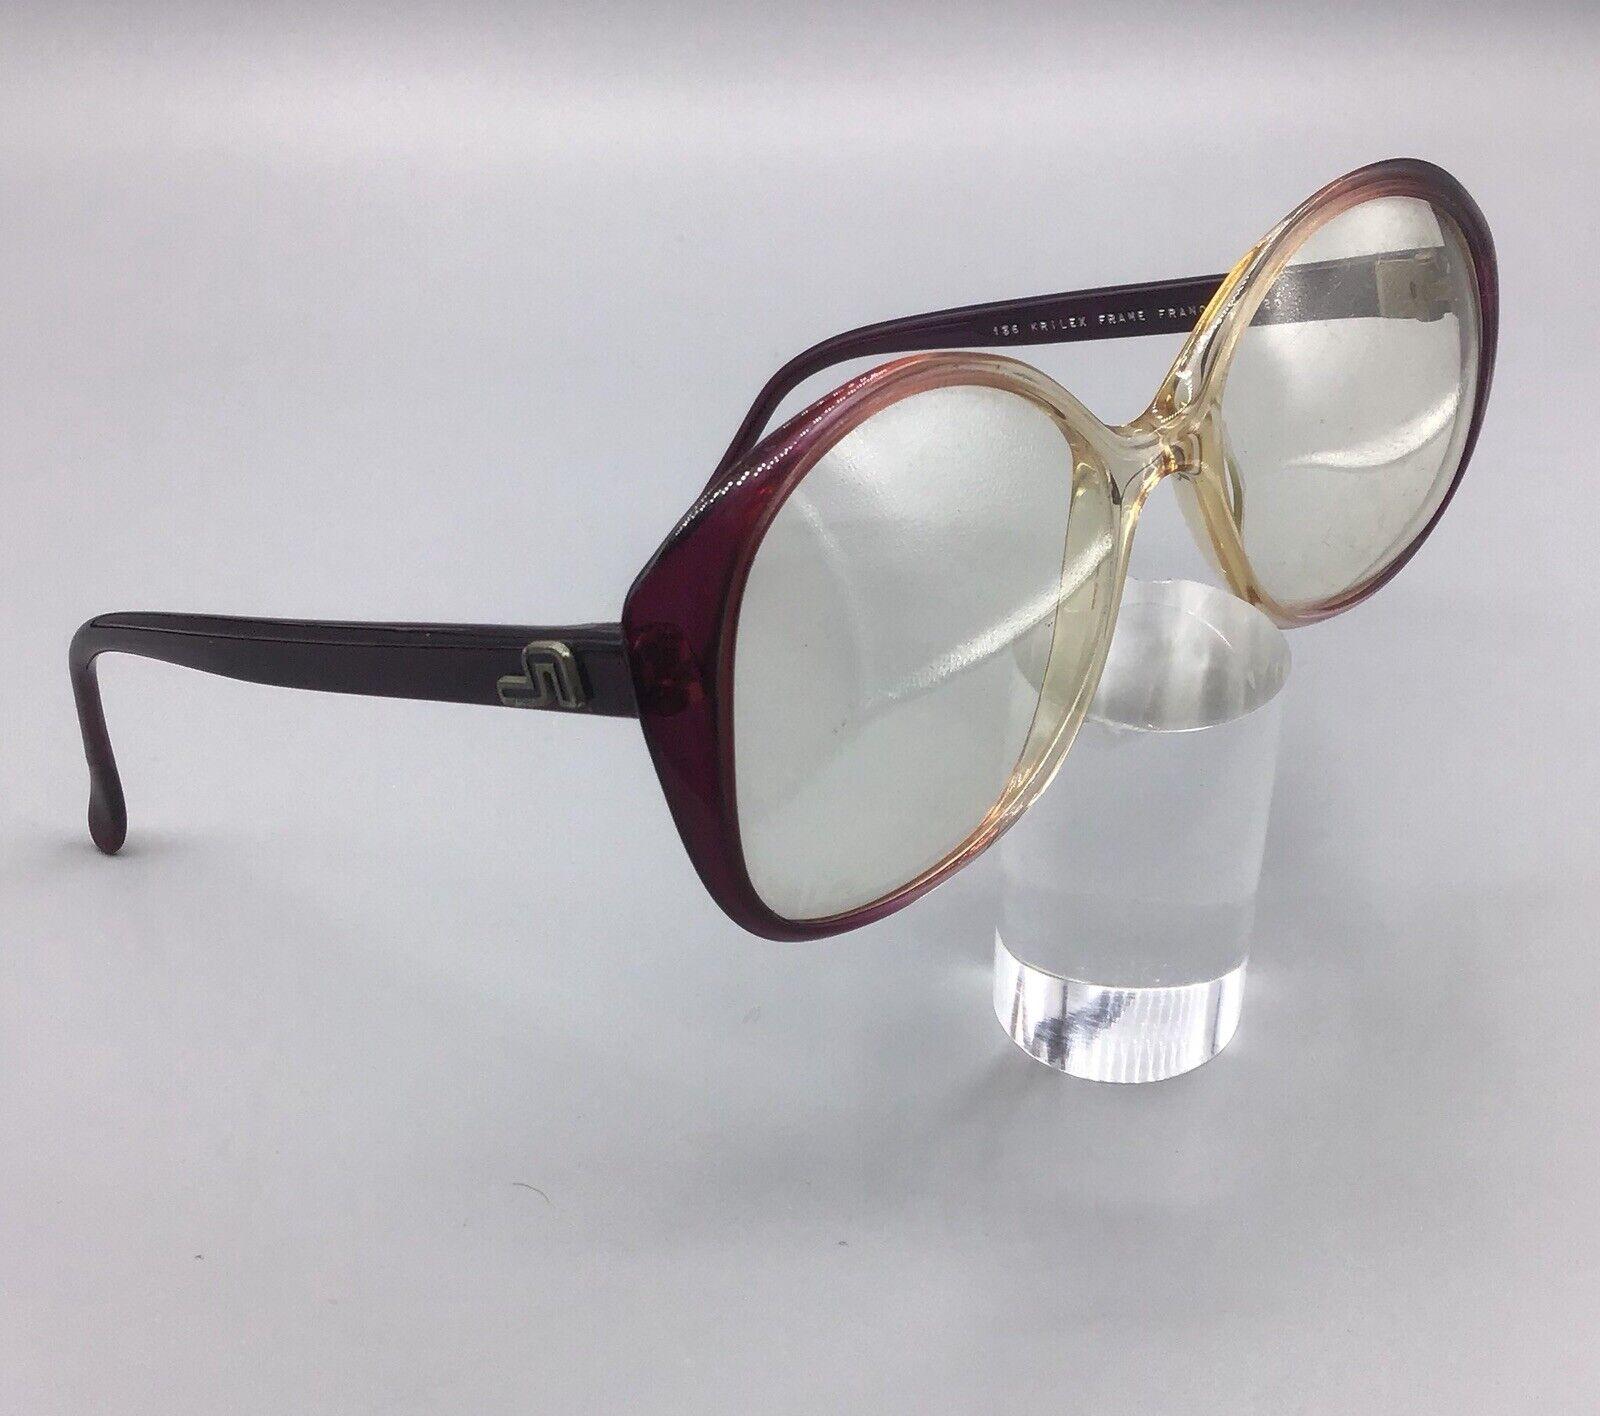 KRILEX FRAME FRANCE pierre leroc paris occhiali vintage lunettes eyewear